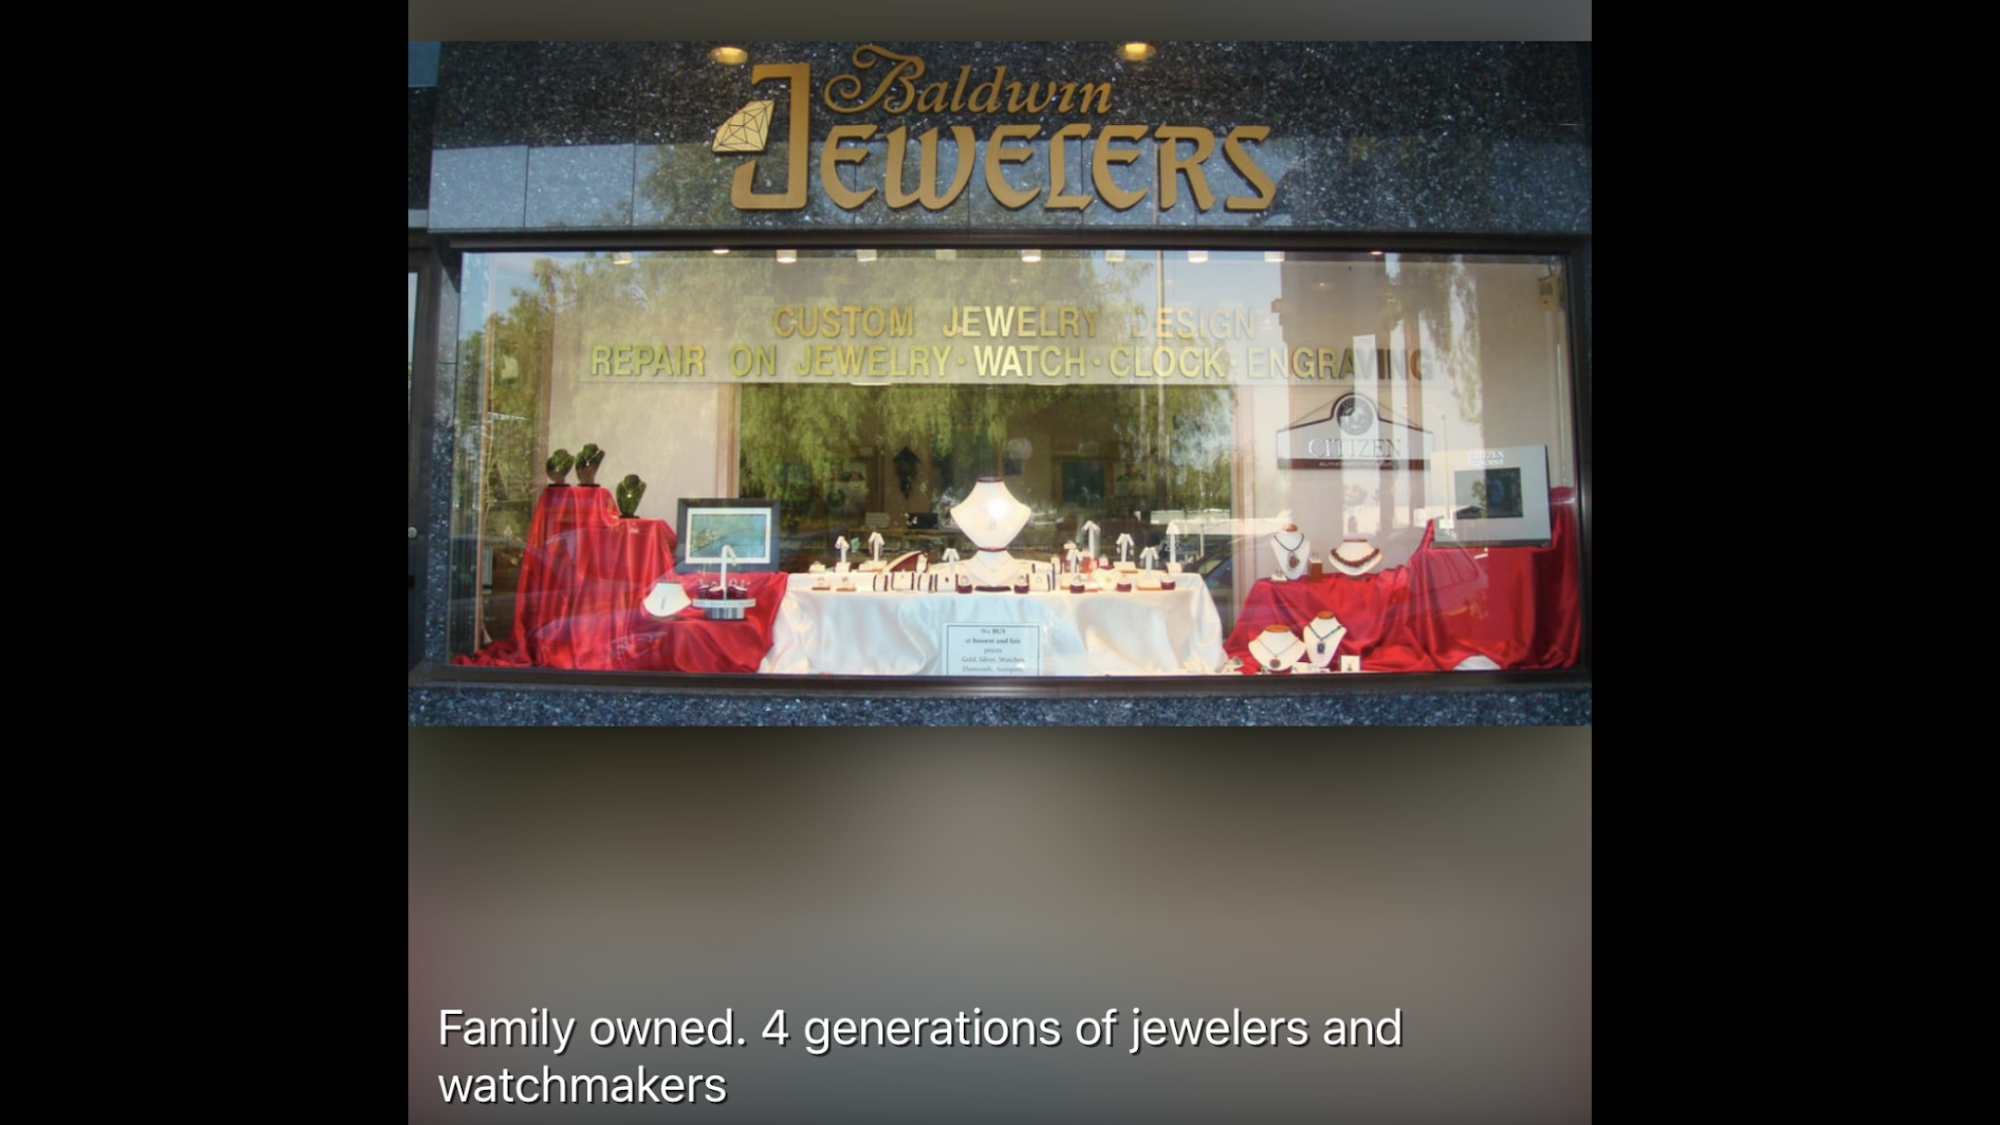 Baldwin Jewelers